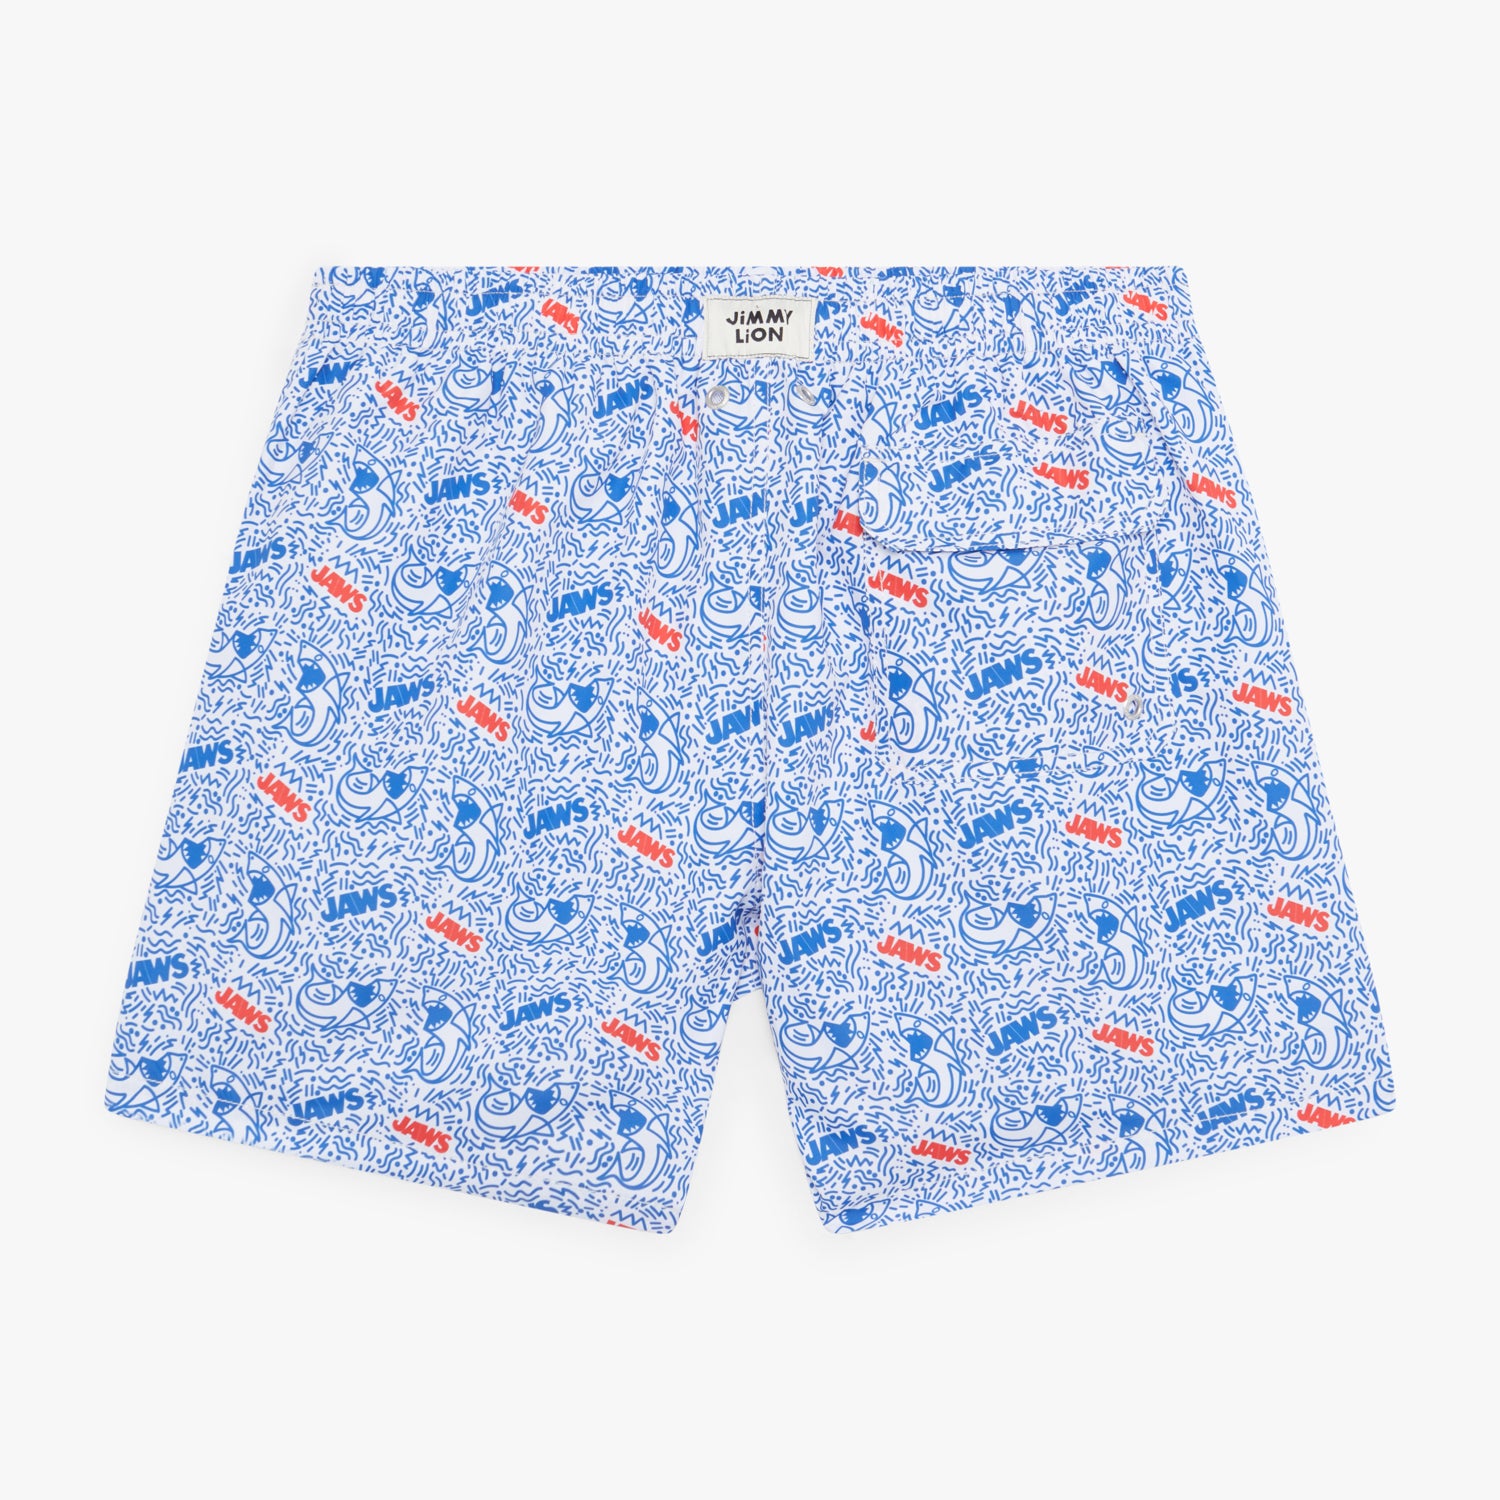 Jaws Swim Shorts - White Blue (1)